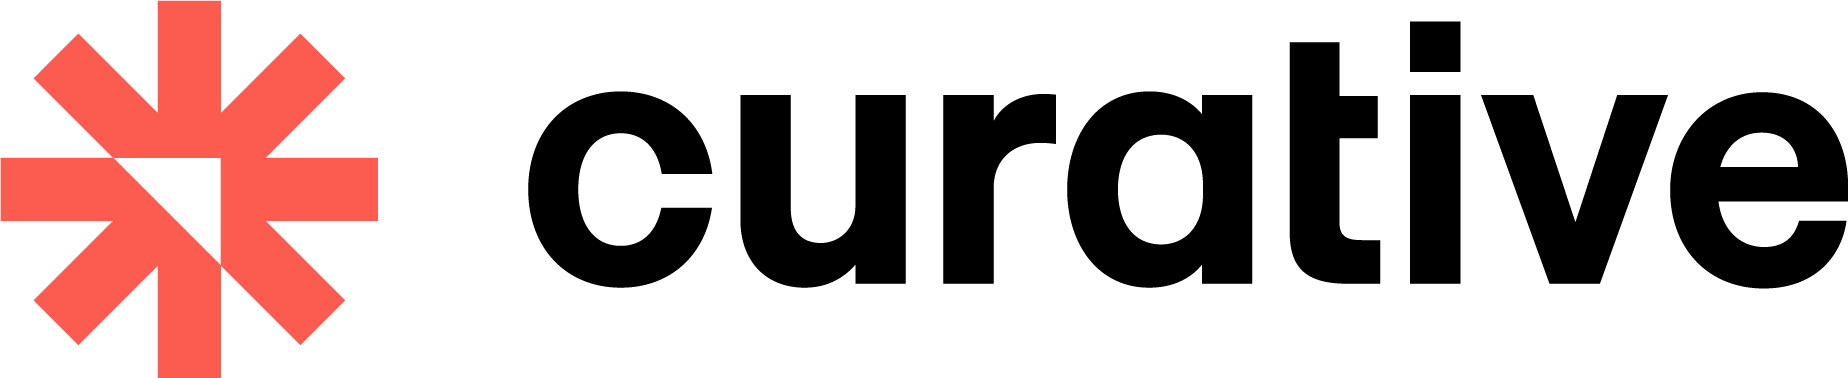 Curative company logo